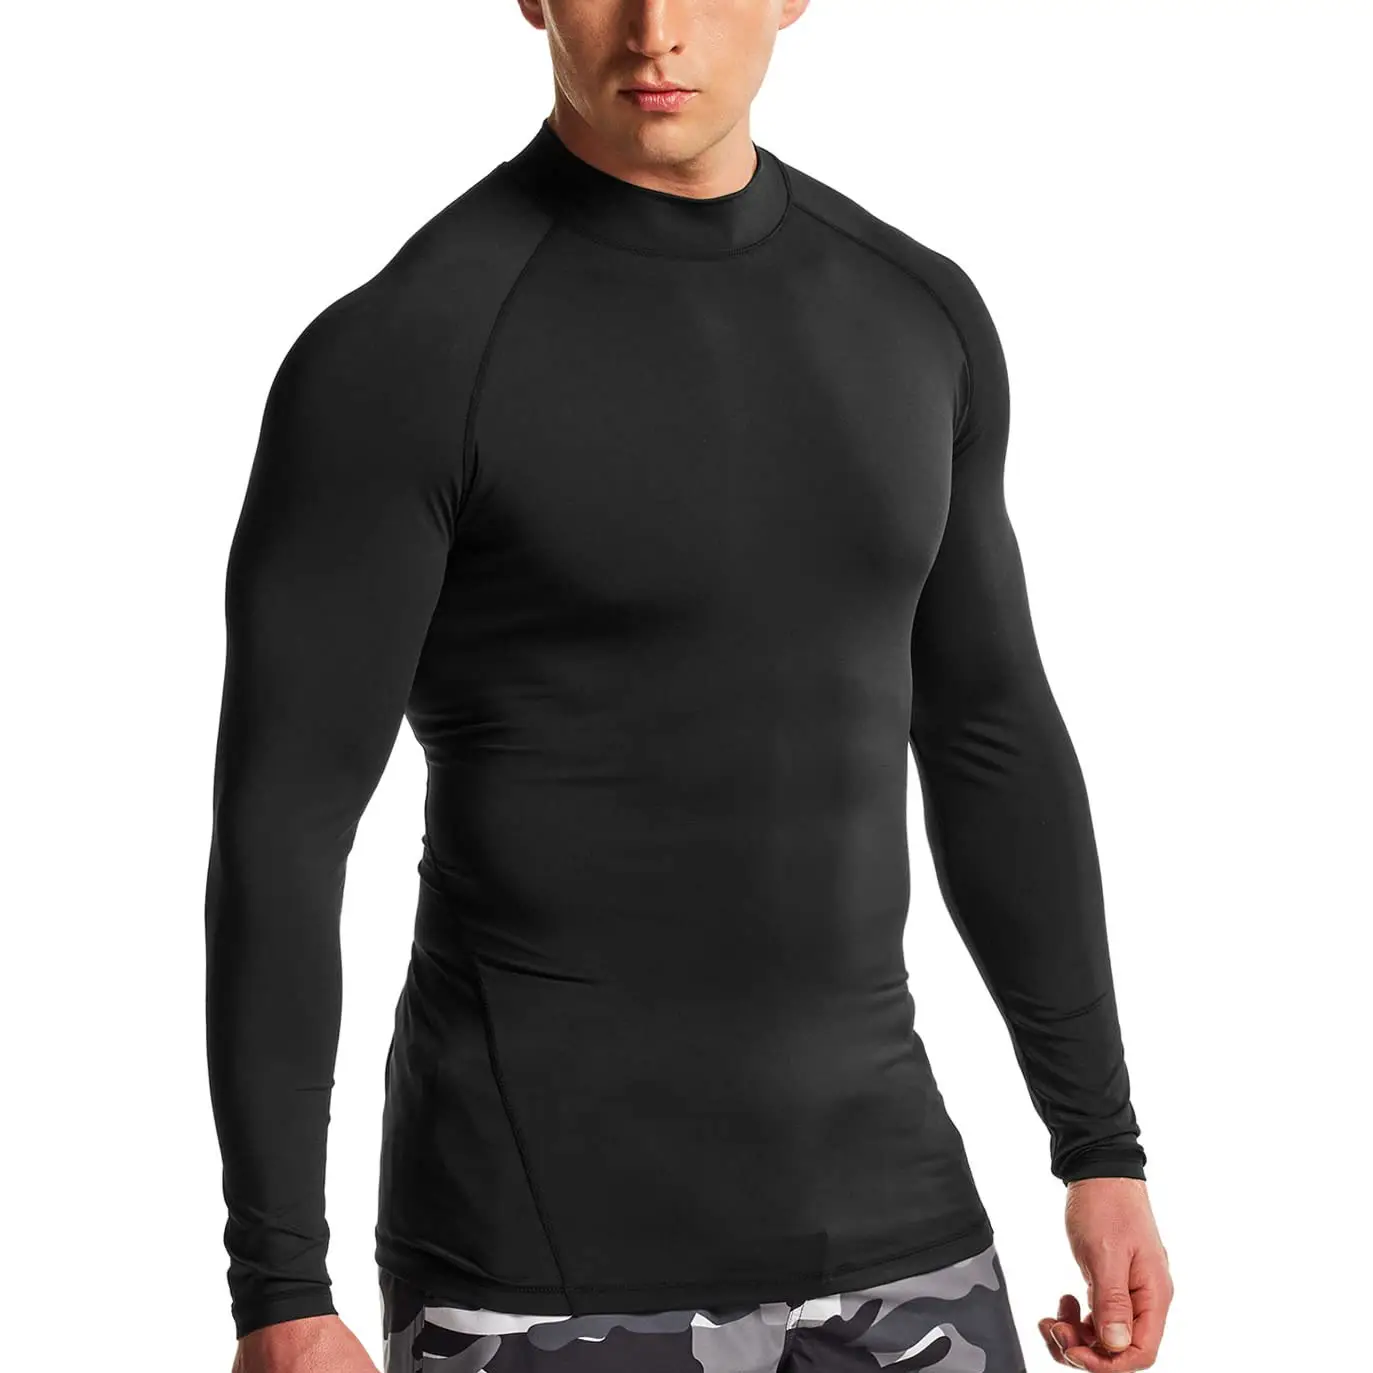 최고의 품질 슬림 핏 남성 압축 체육관웨어 래쉬 가드 도매 가격 편안한 압축 마모 셔츠 제조 업체